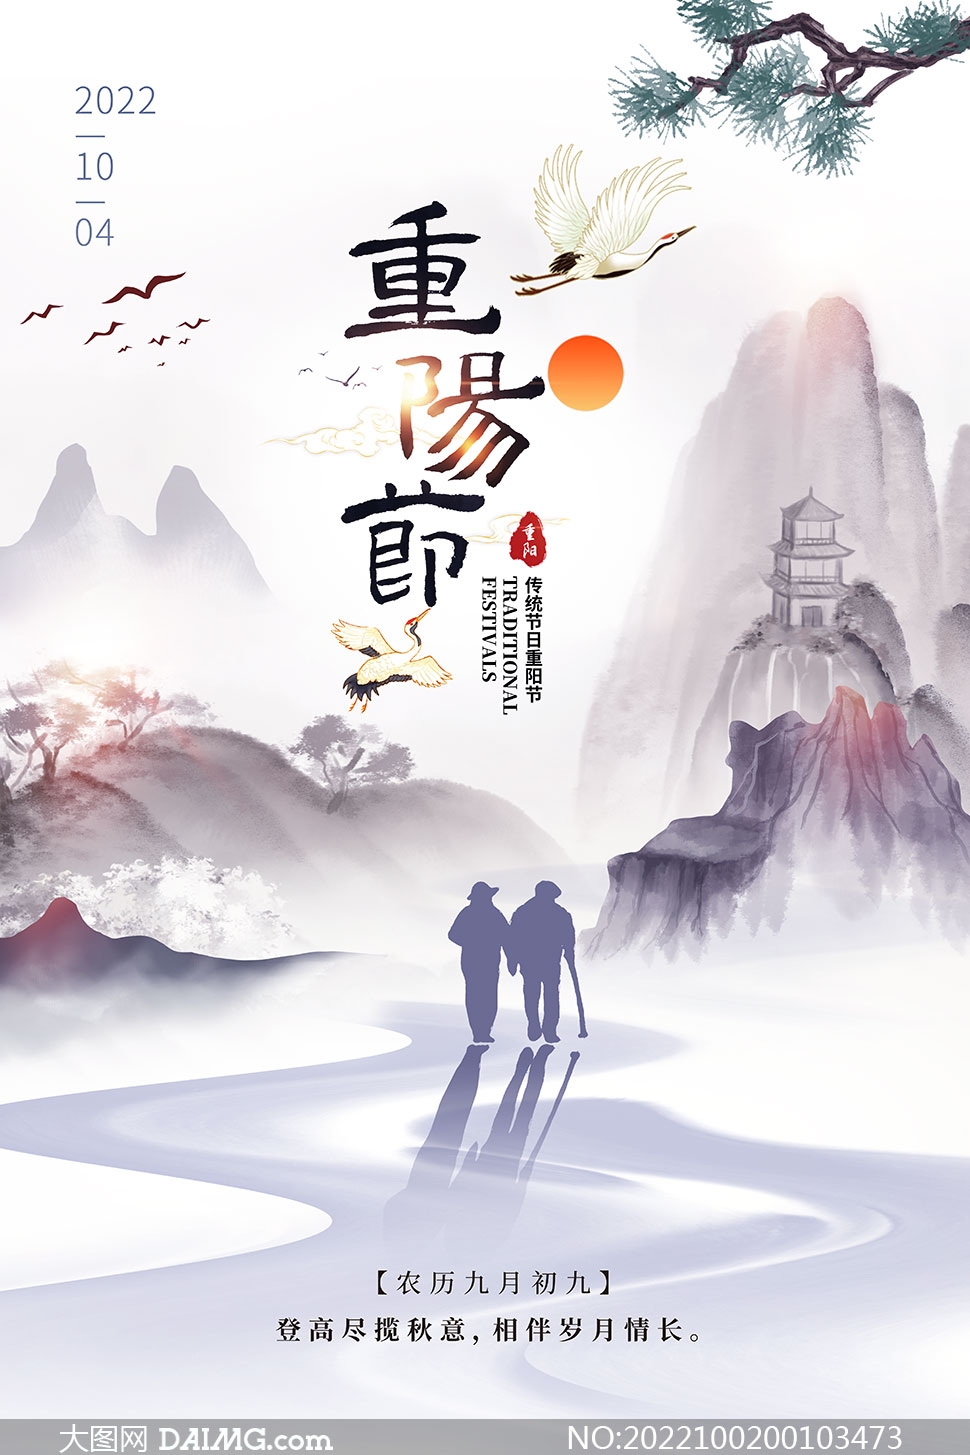 中國風重陽節活動宣傳海報PSD素材